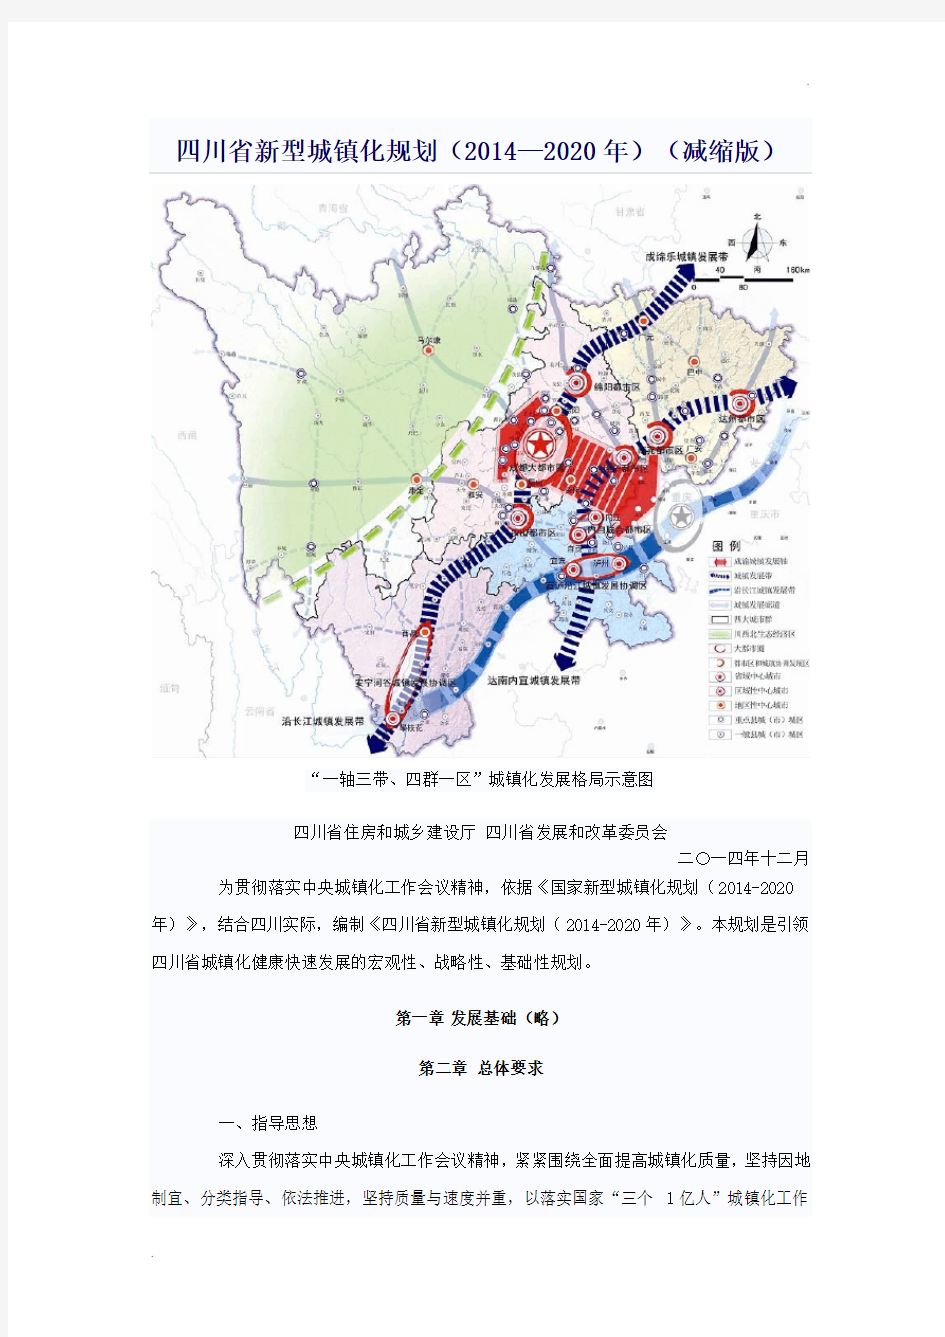 四川省新型城镇化规划(2014—2020年)(减缩版)